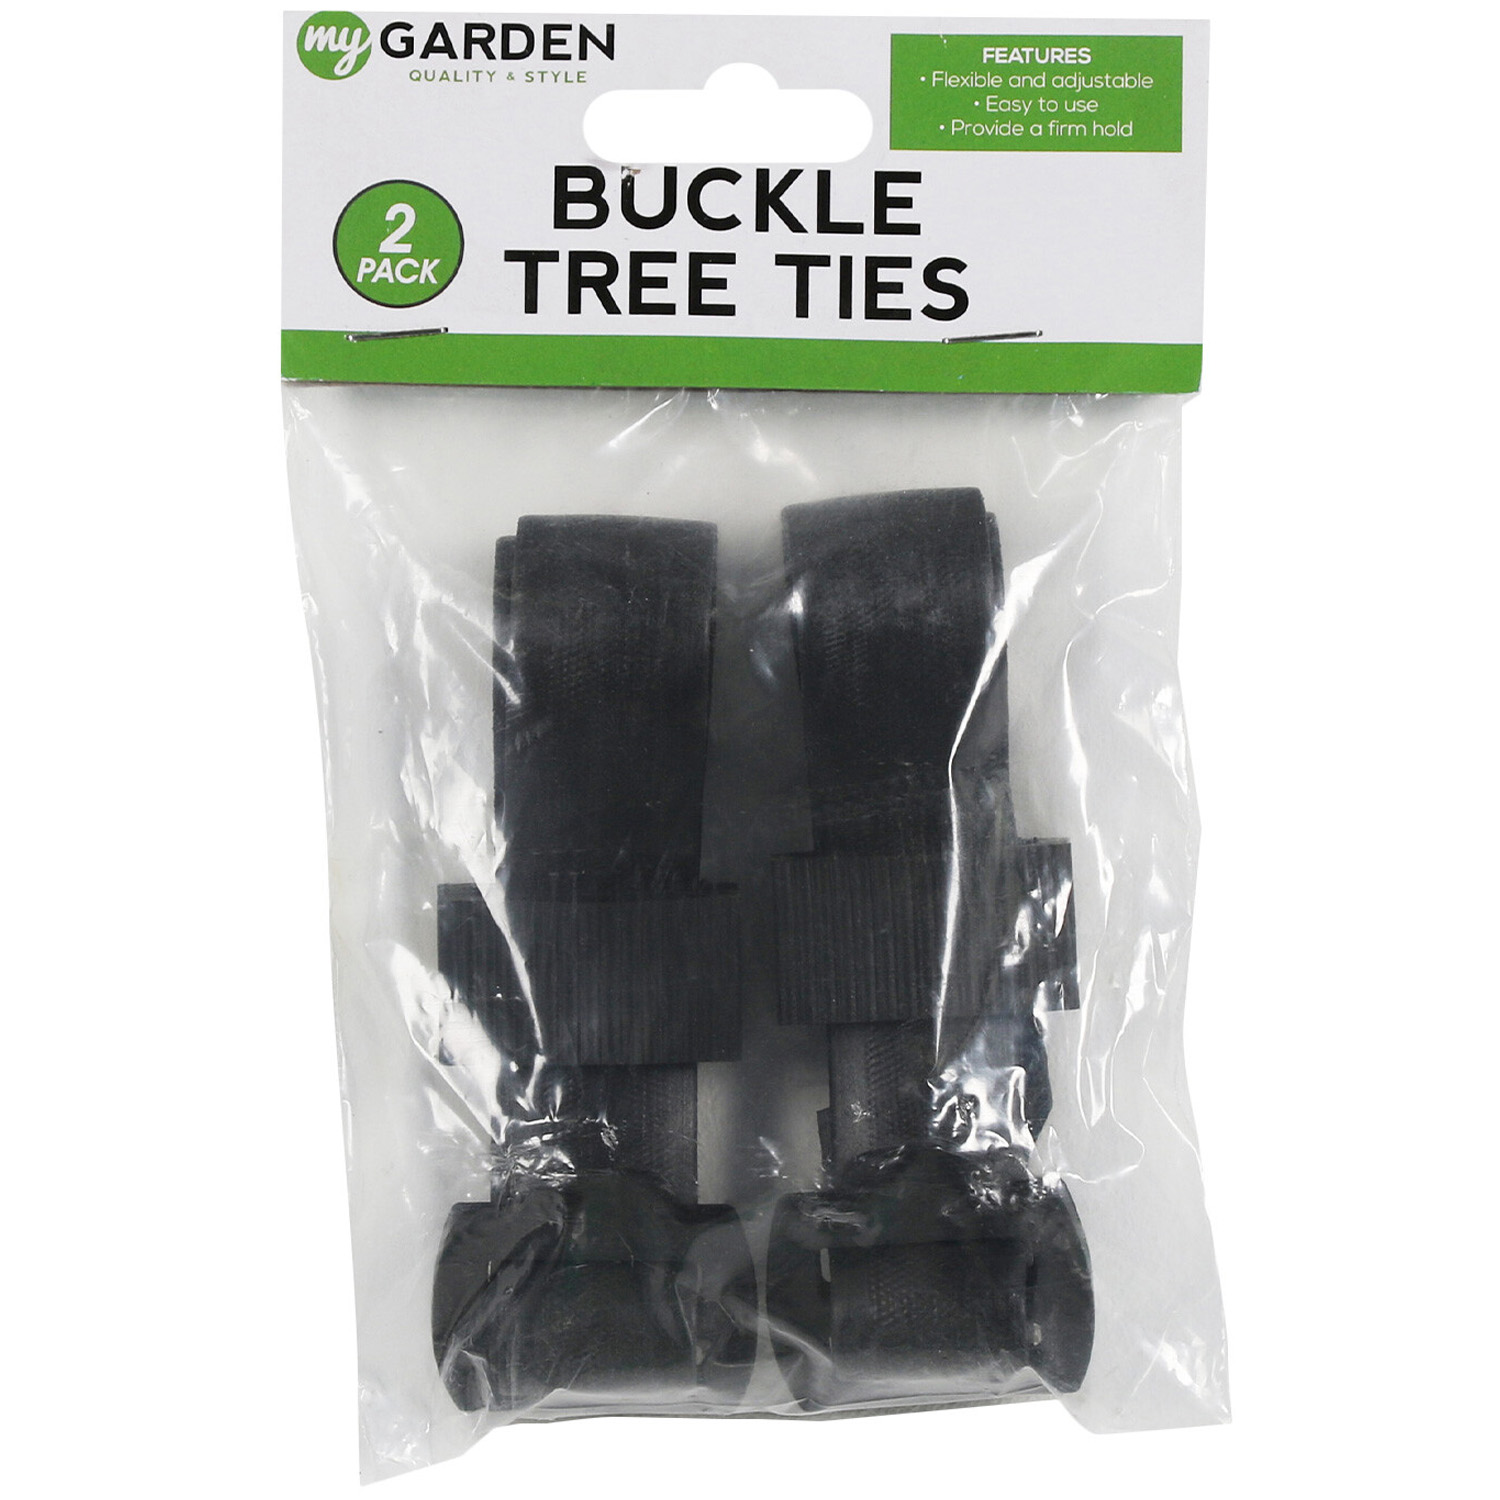 Buckle Tree Ties Image